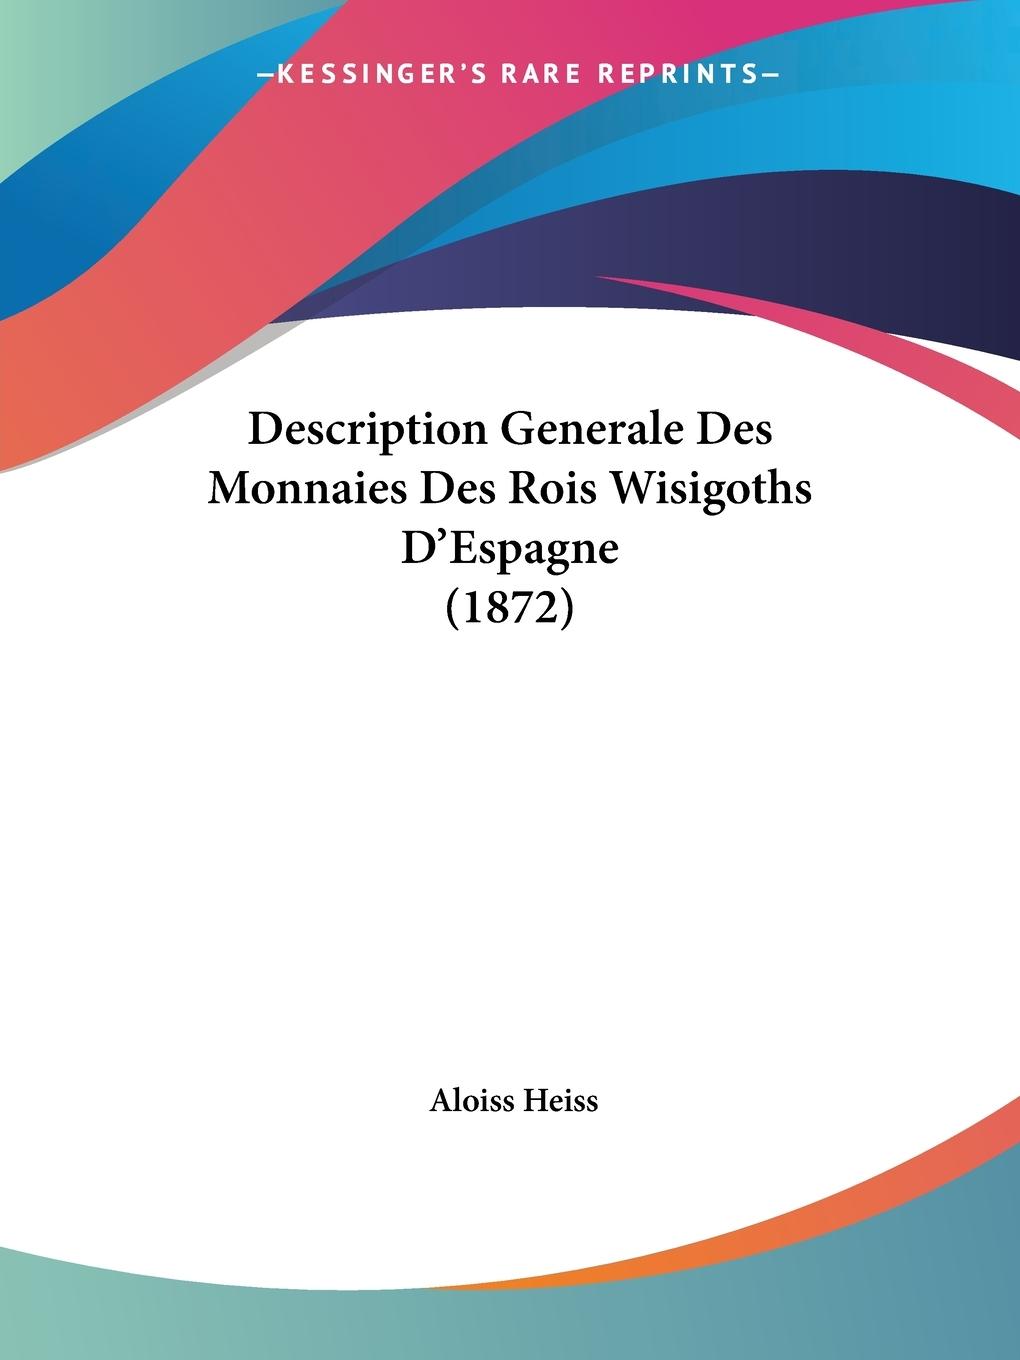 Description Generale Des Monnaies Des Rois Wisigoths D Espagne (1872) - Heiss, Aloiss